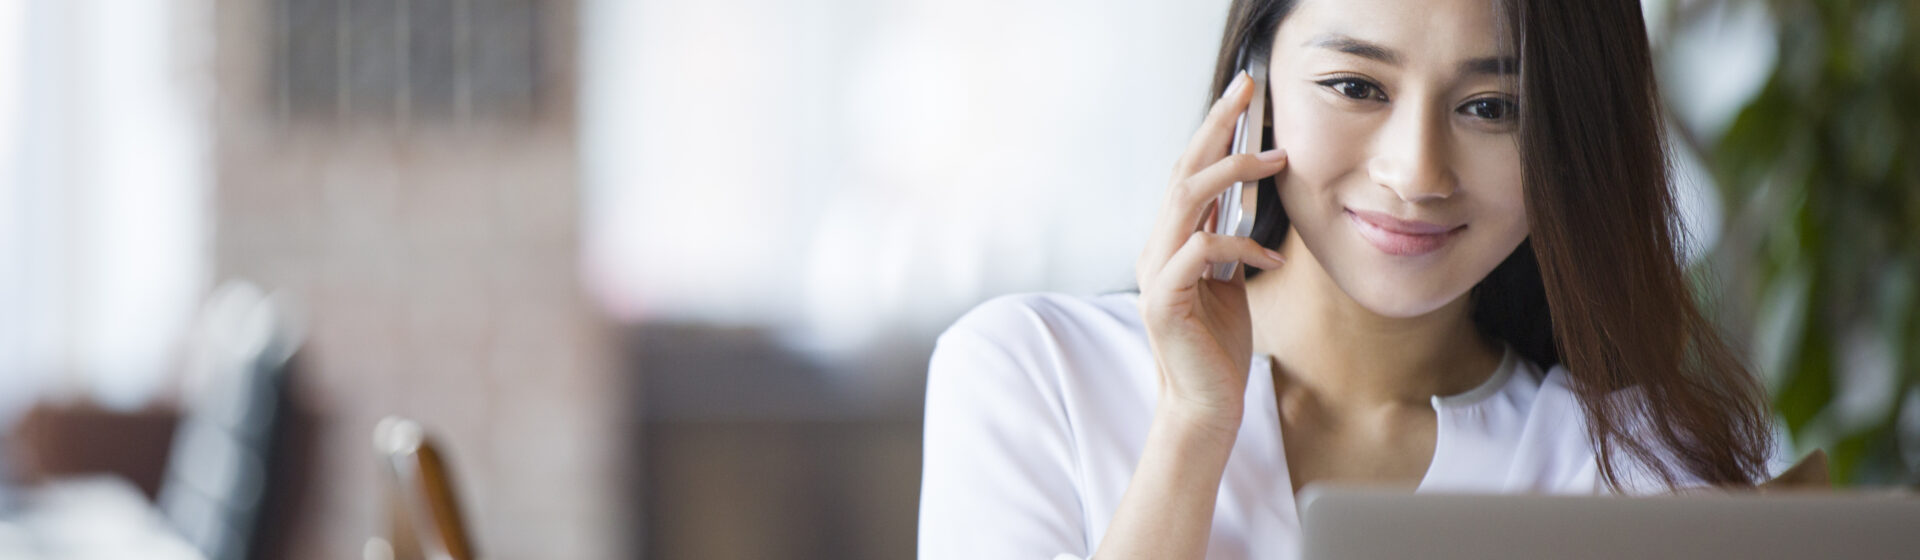 Uma mulher numa mesa de trabalho fazendo uma ligação telefônica para cobrar um cliente